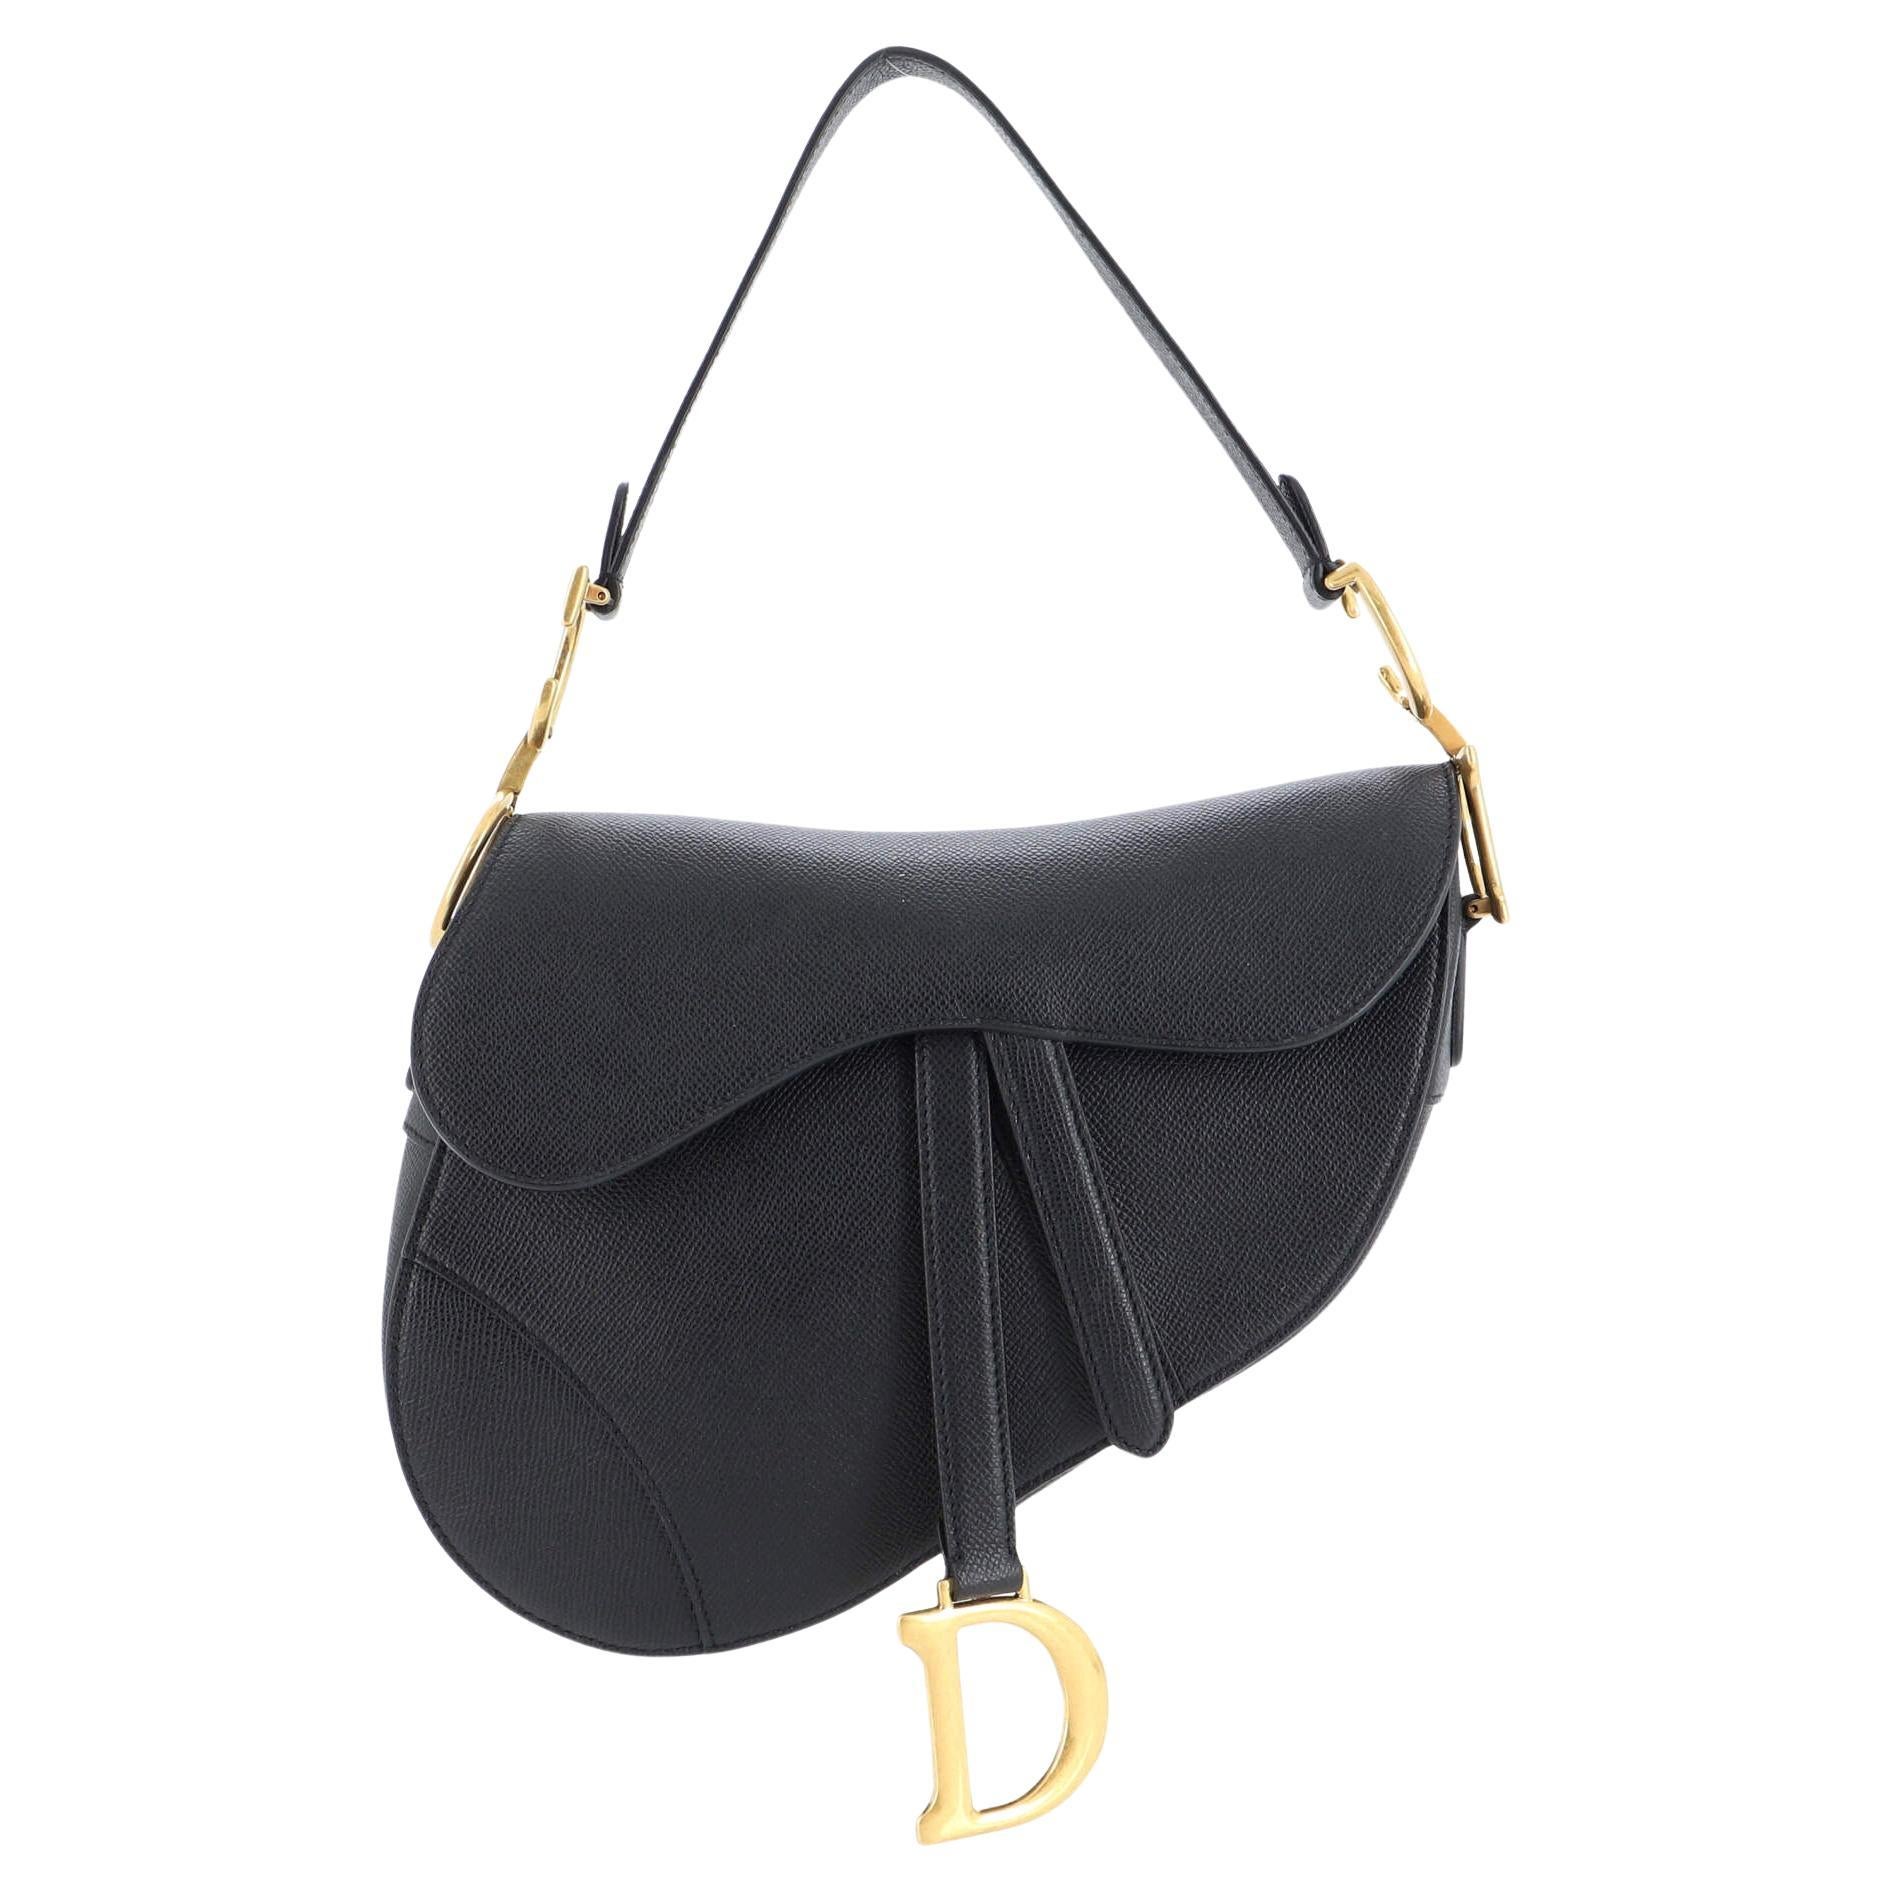 Dior Grey/Beige Stringray and Suede Flap Saddle Shoulder Bag Dior